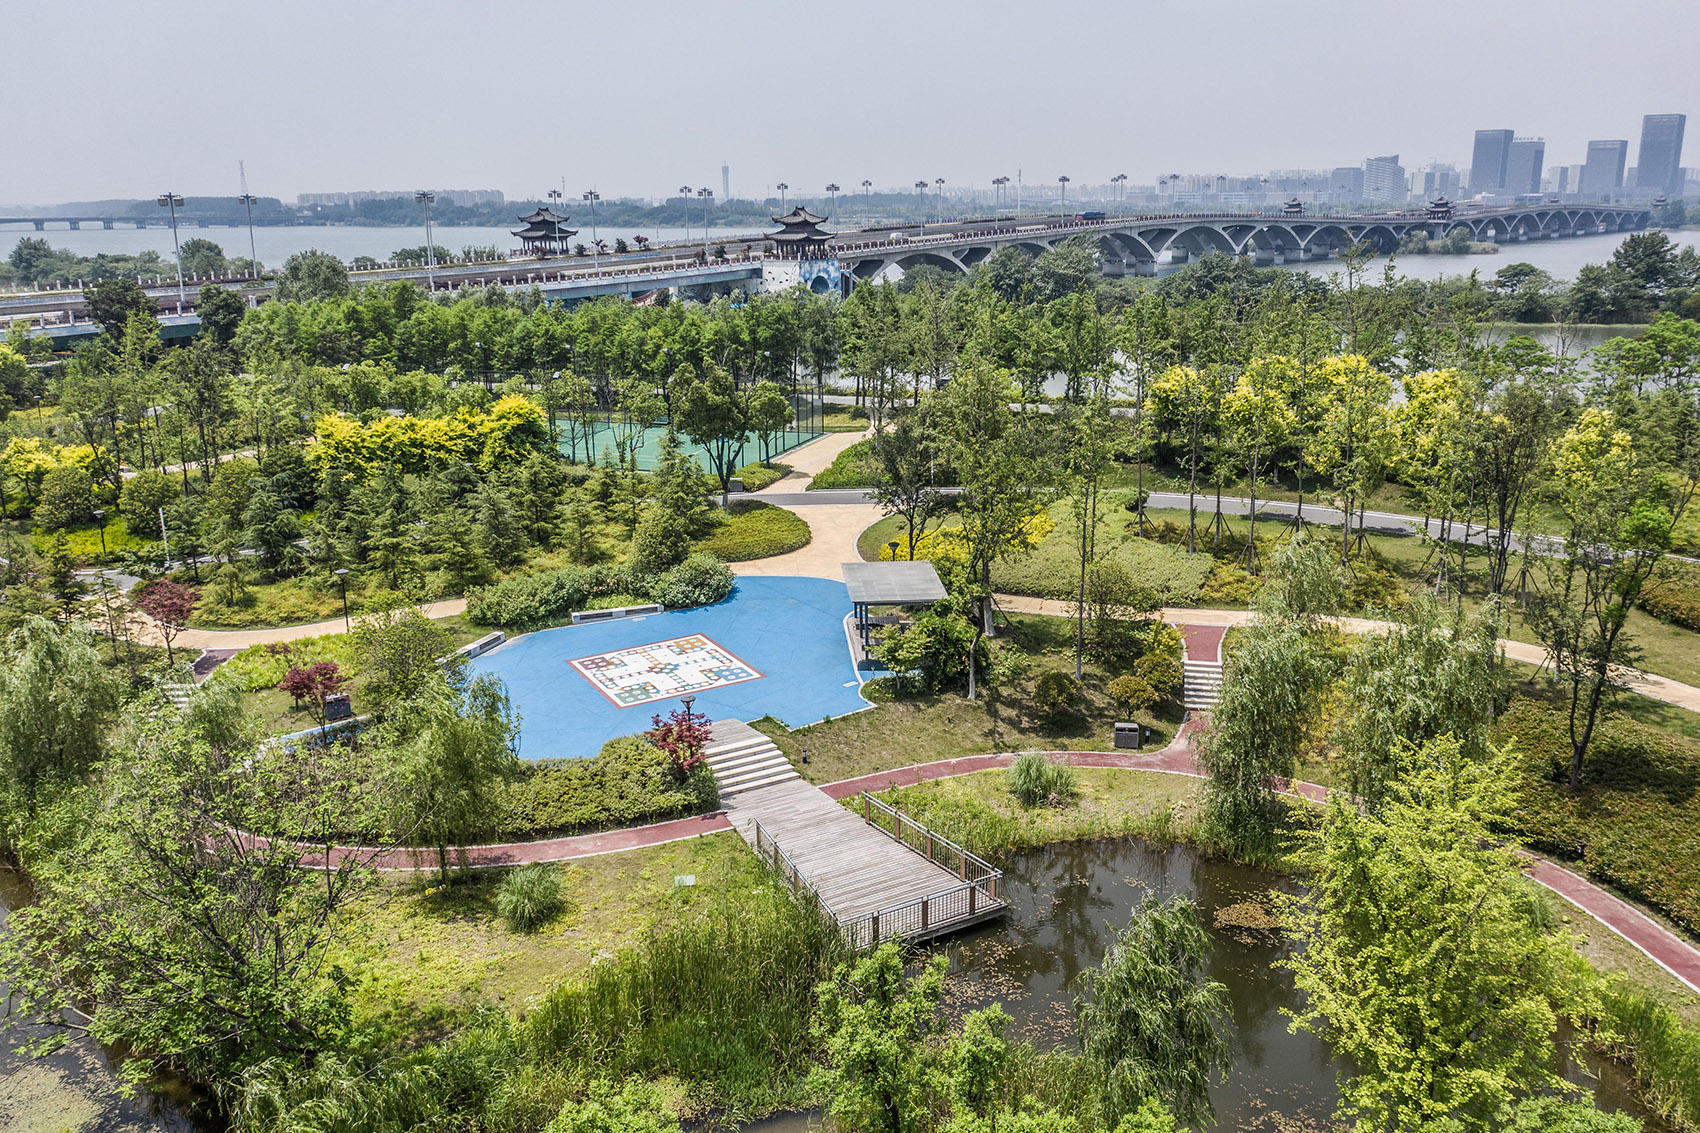 扬州的伟大复兴 &  廖家沟城市中央公园，扬州/迈向繁荣生态的后瘦西湖时代-102